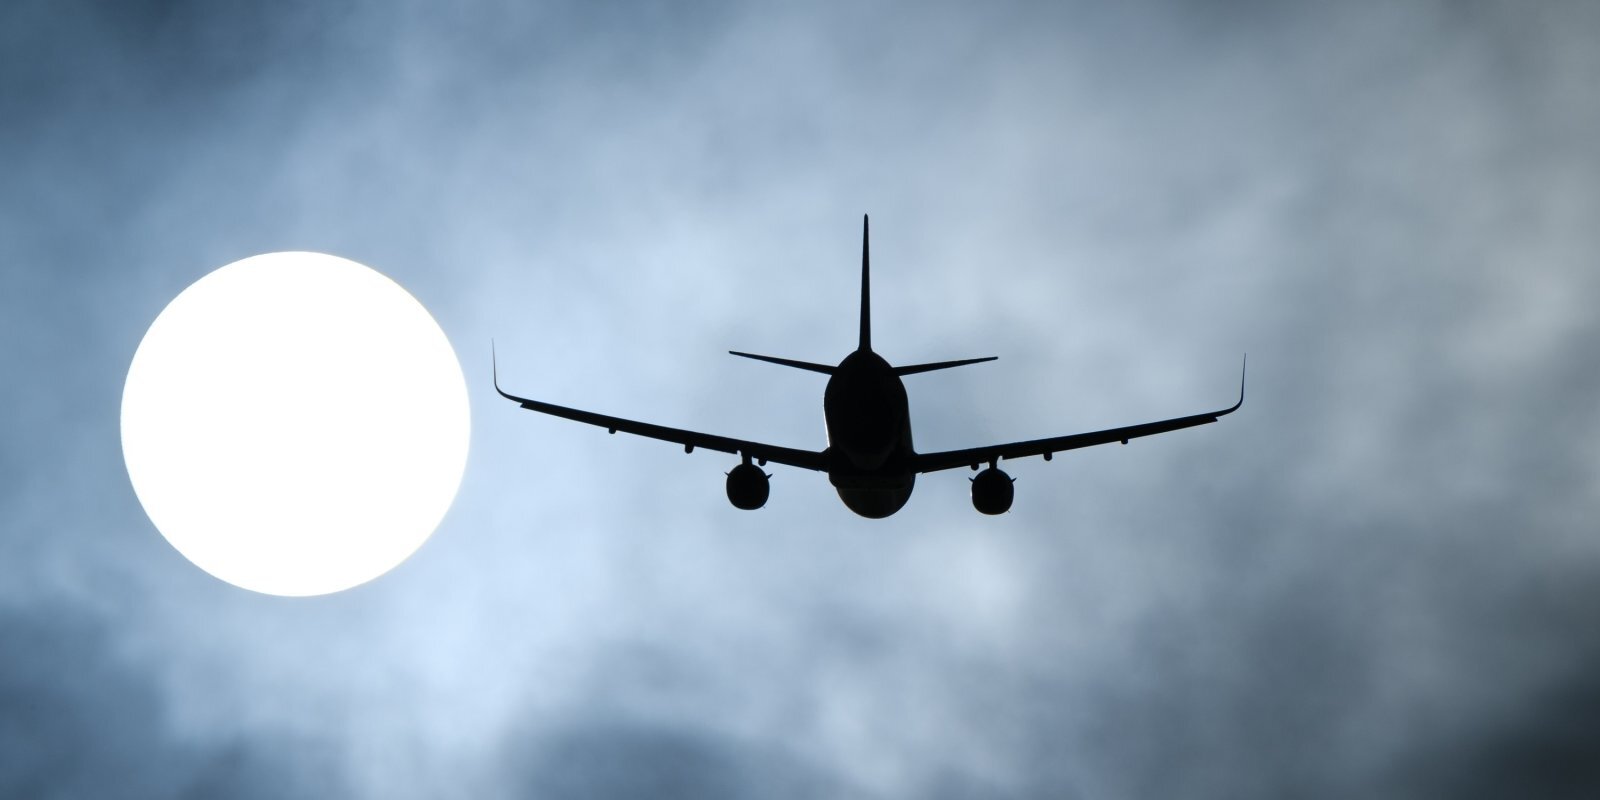 Авиация восстанавливается. Аэропорт "Рига" обещает новые маршруты и авиакомпании